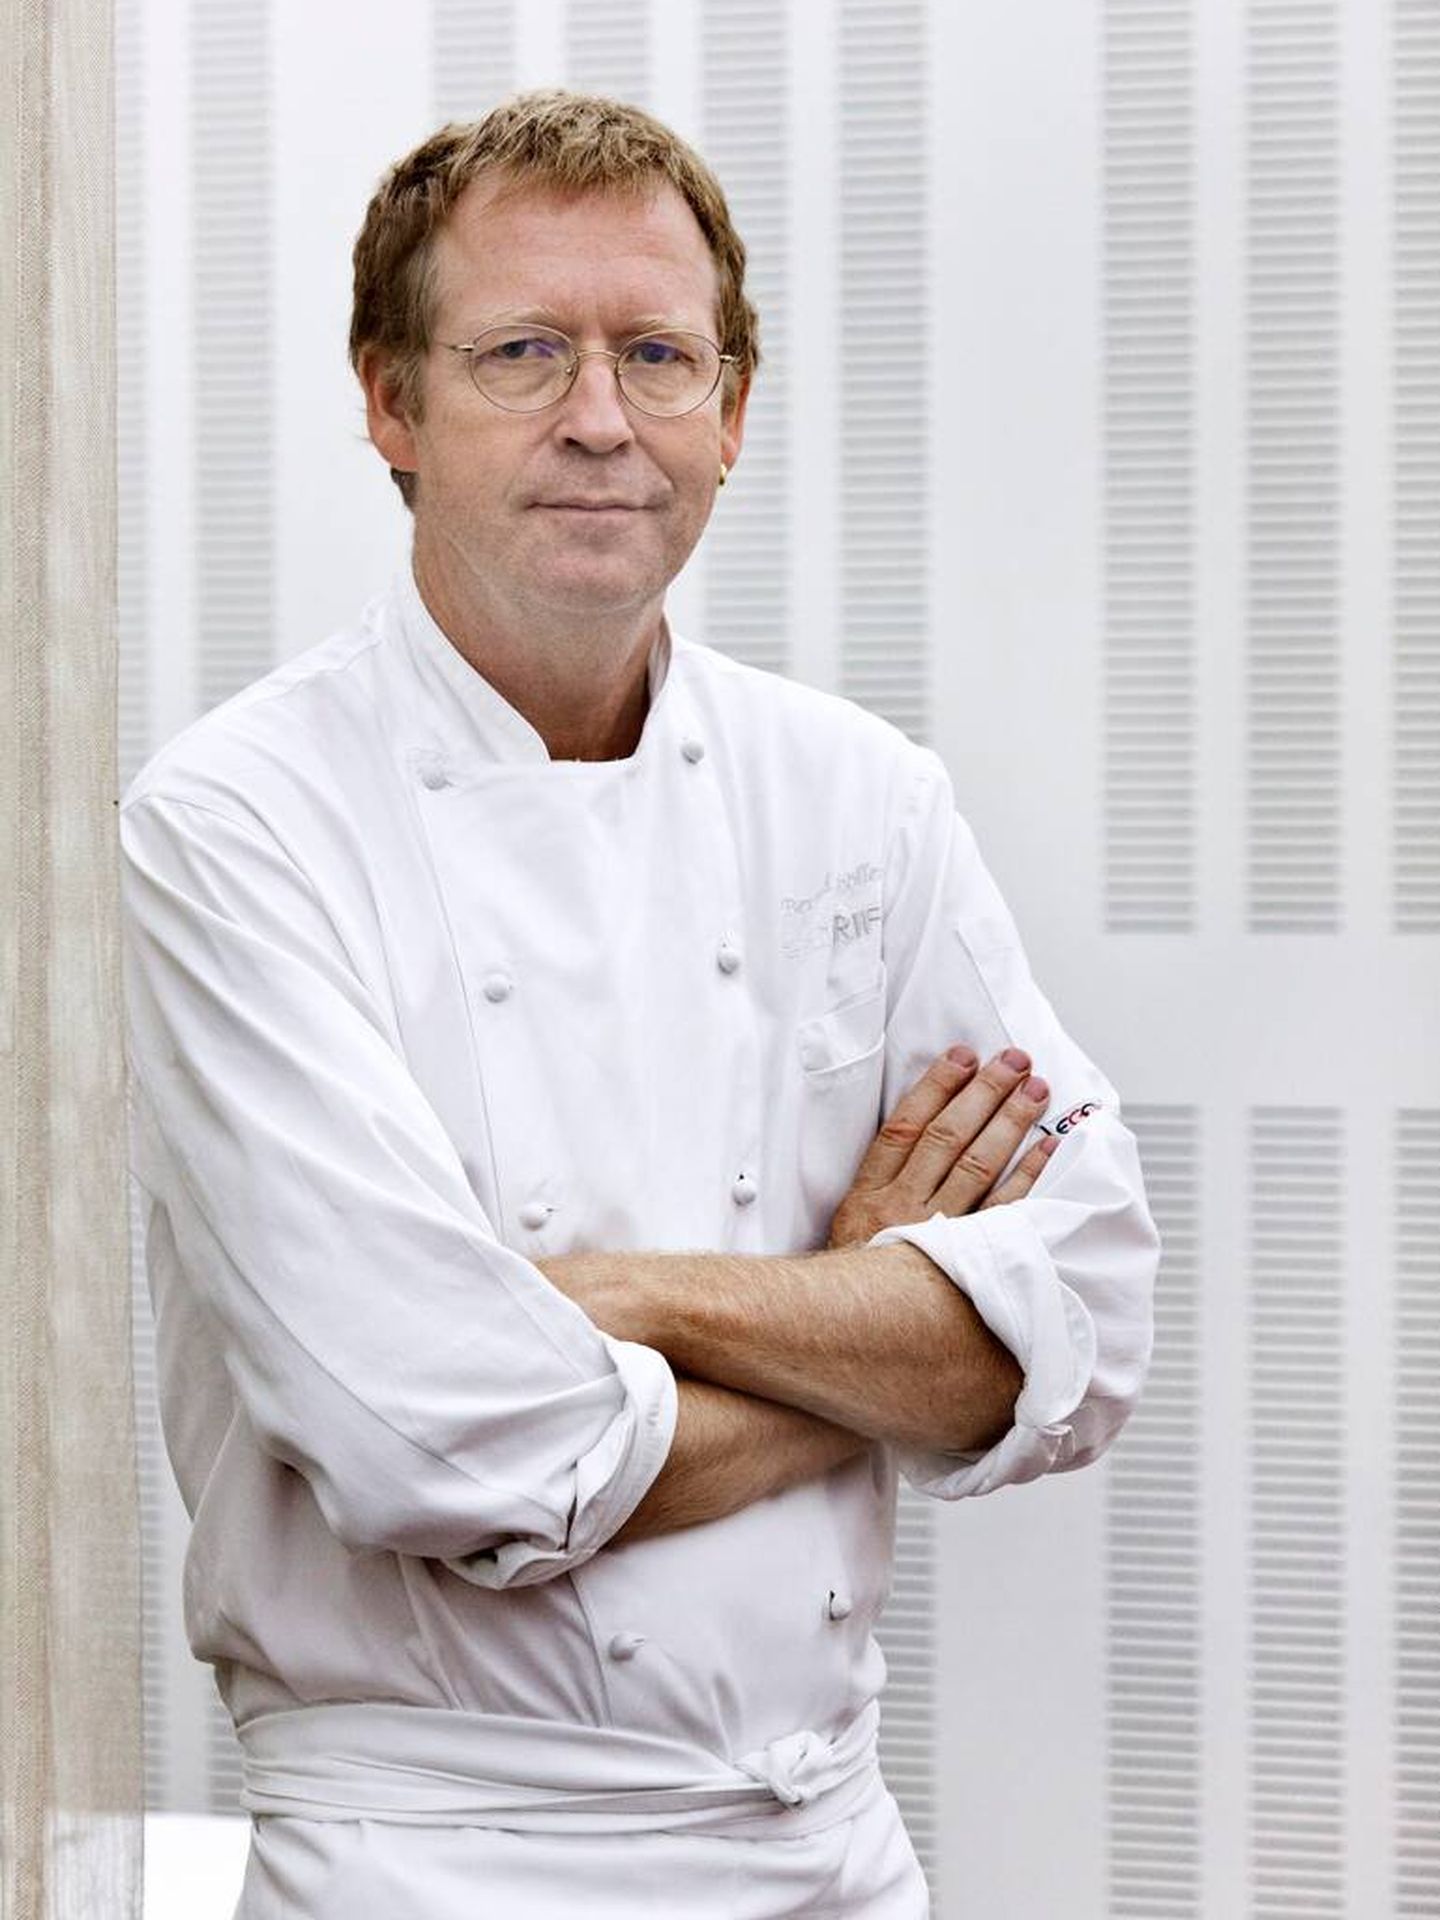 Bernd Knöller, chez de Riff, restaurante valenciano acostumbrado a innovar con el arroz. (Cortesía)